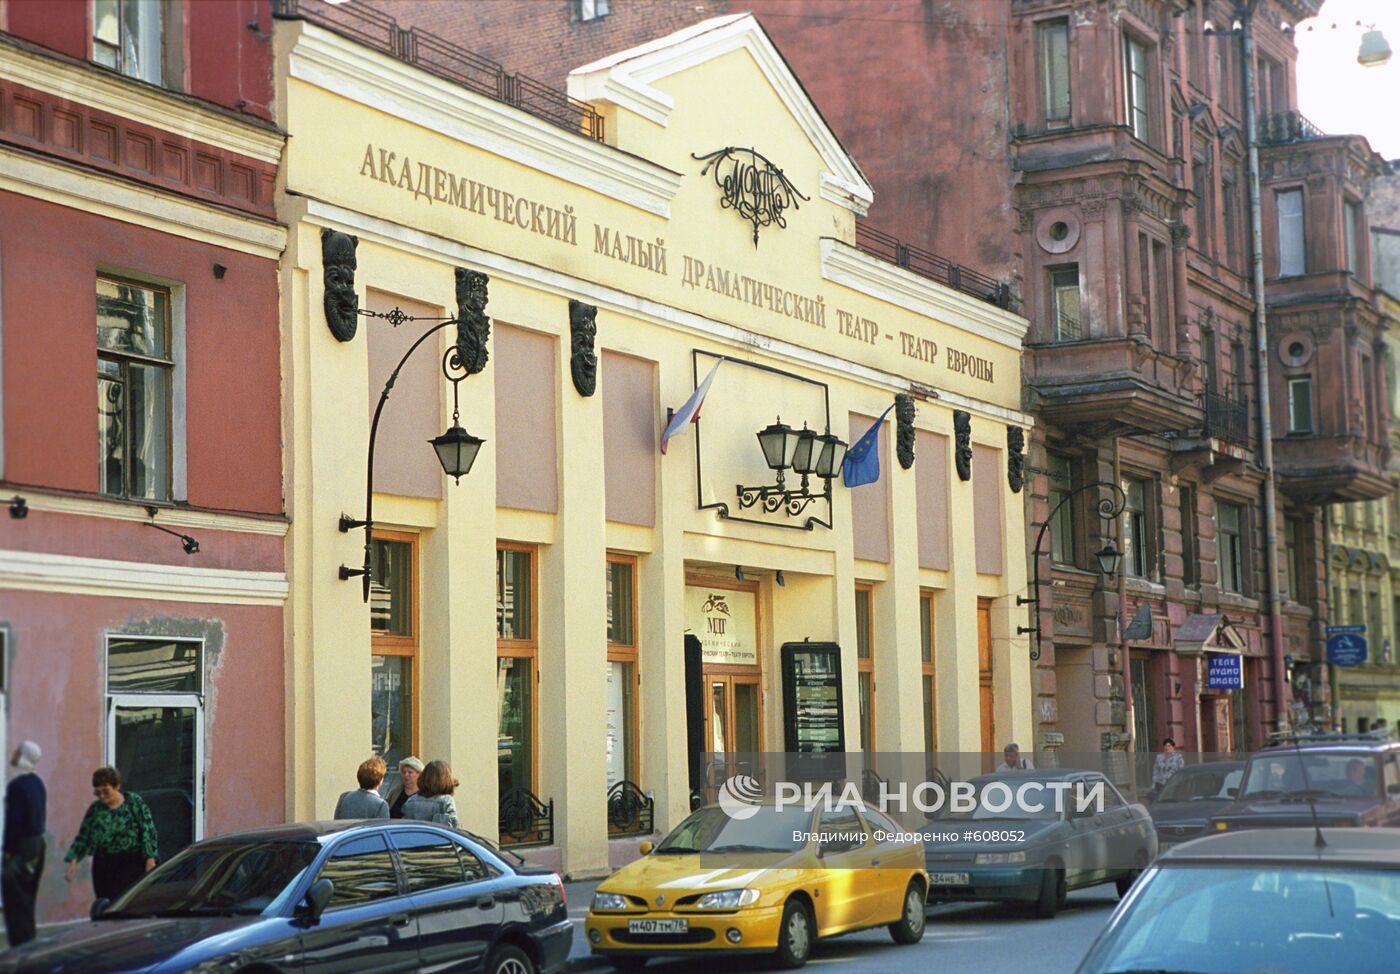 малый драматический театр санкт петербург фото